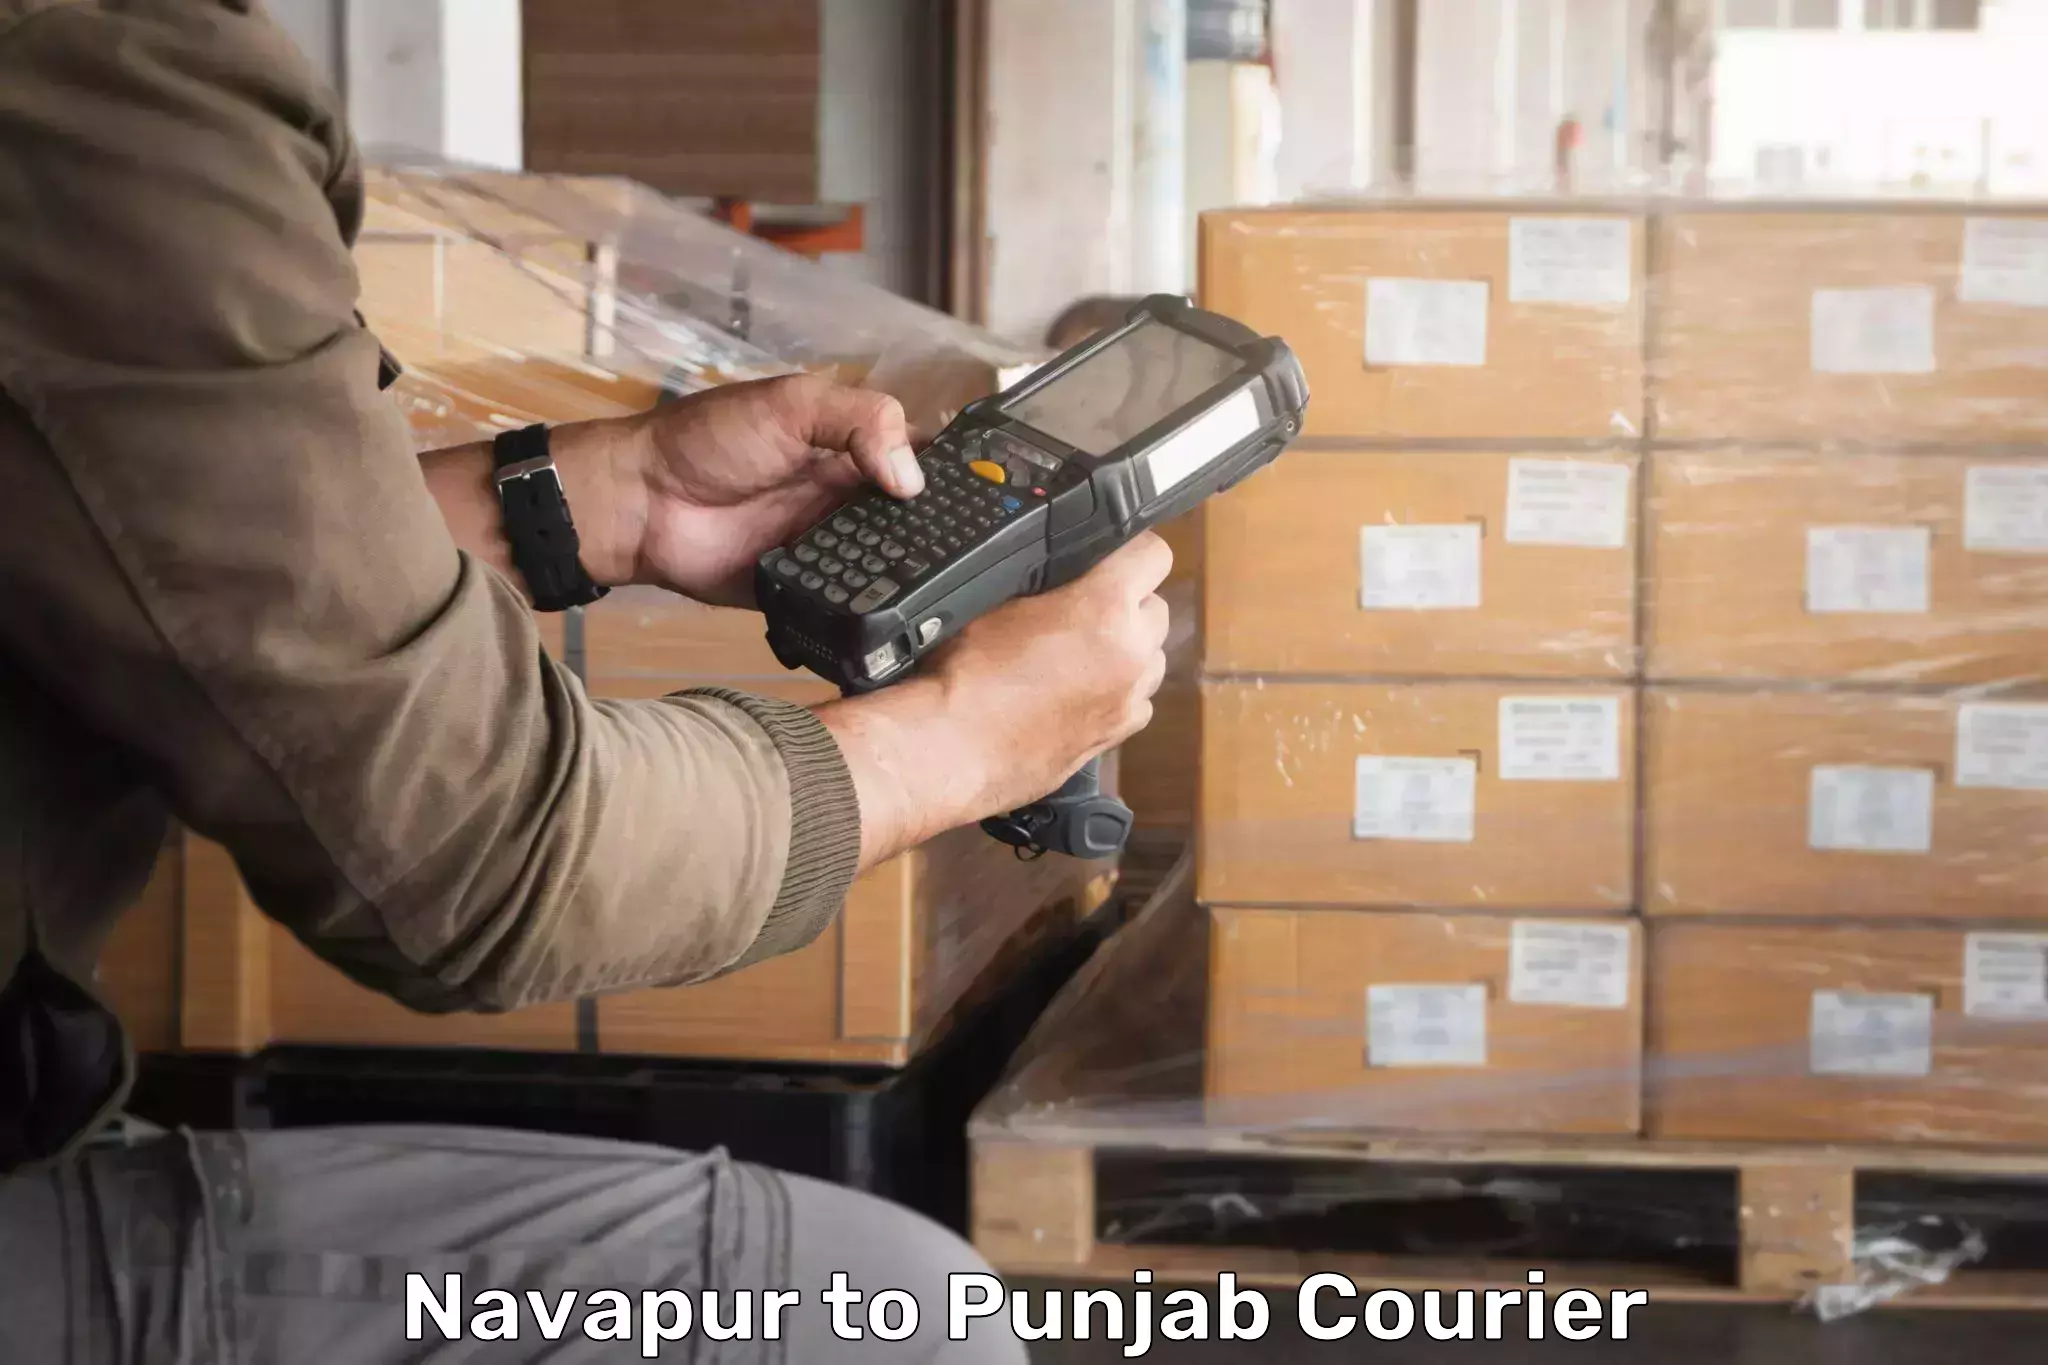 Flexible parcel services Navapur to Batala